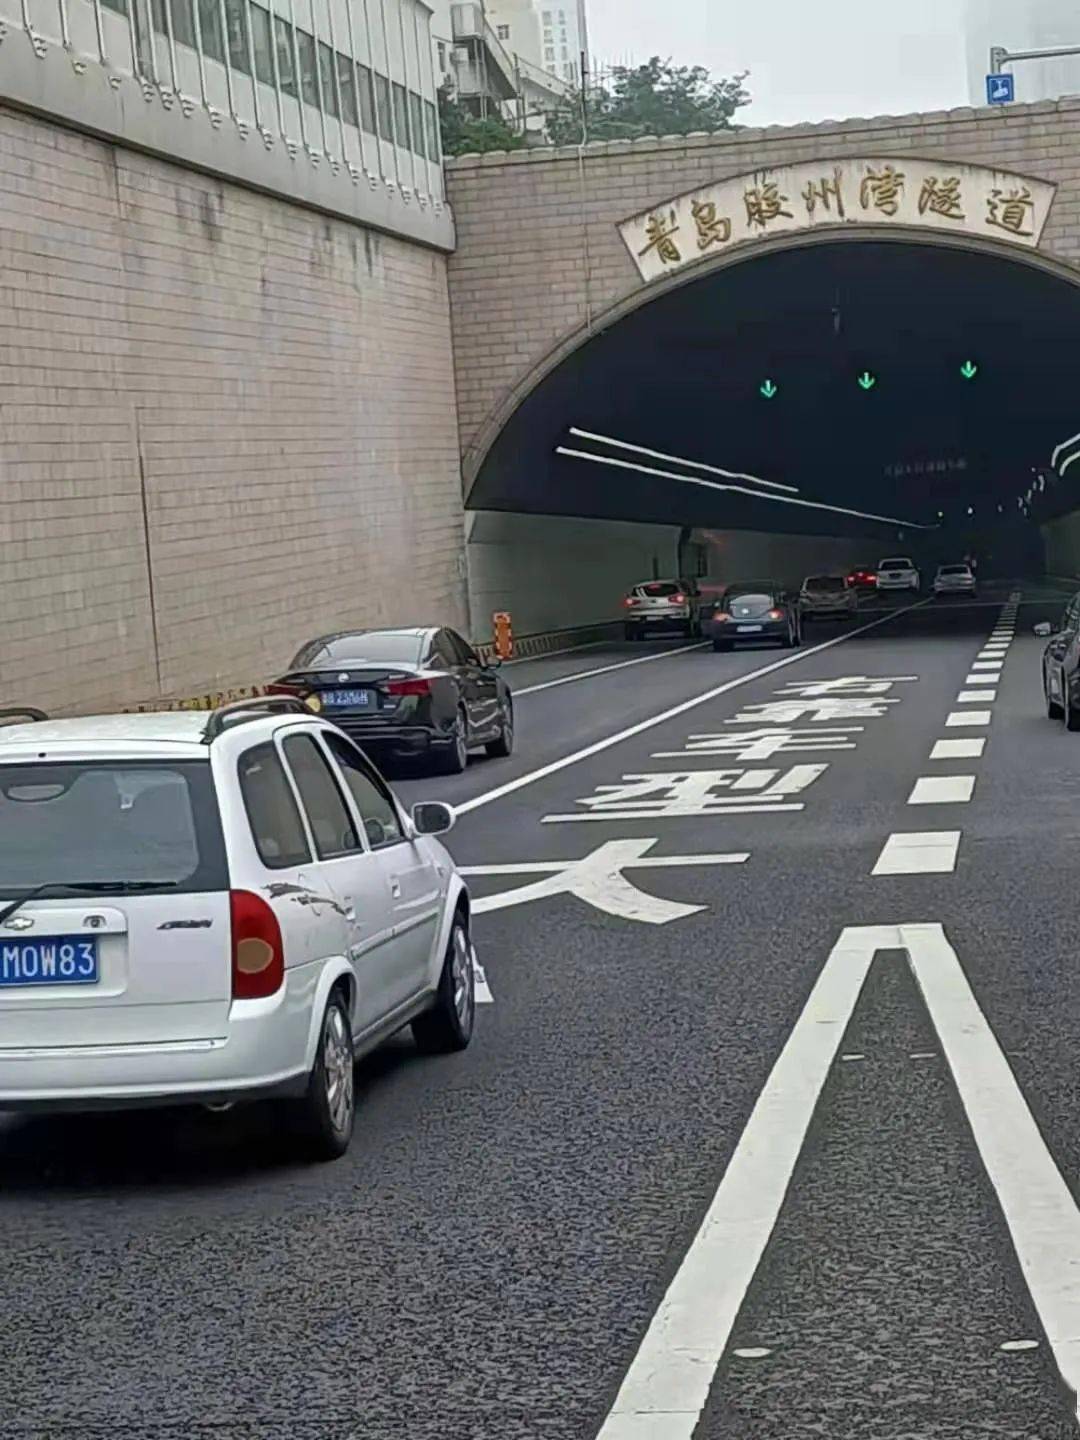 预防和减少道路交通事故,结合近年来胶州湾隧道通行情况分析,青岛交警